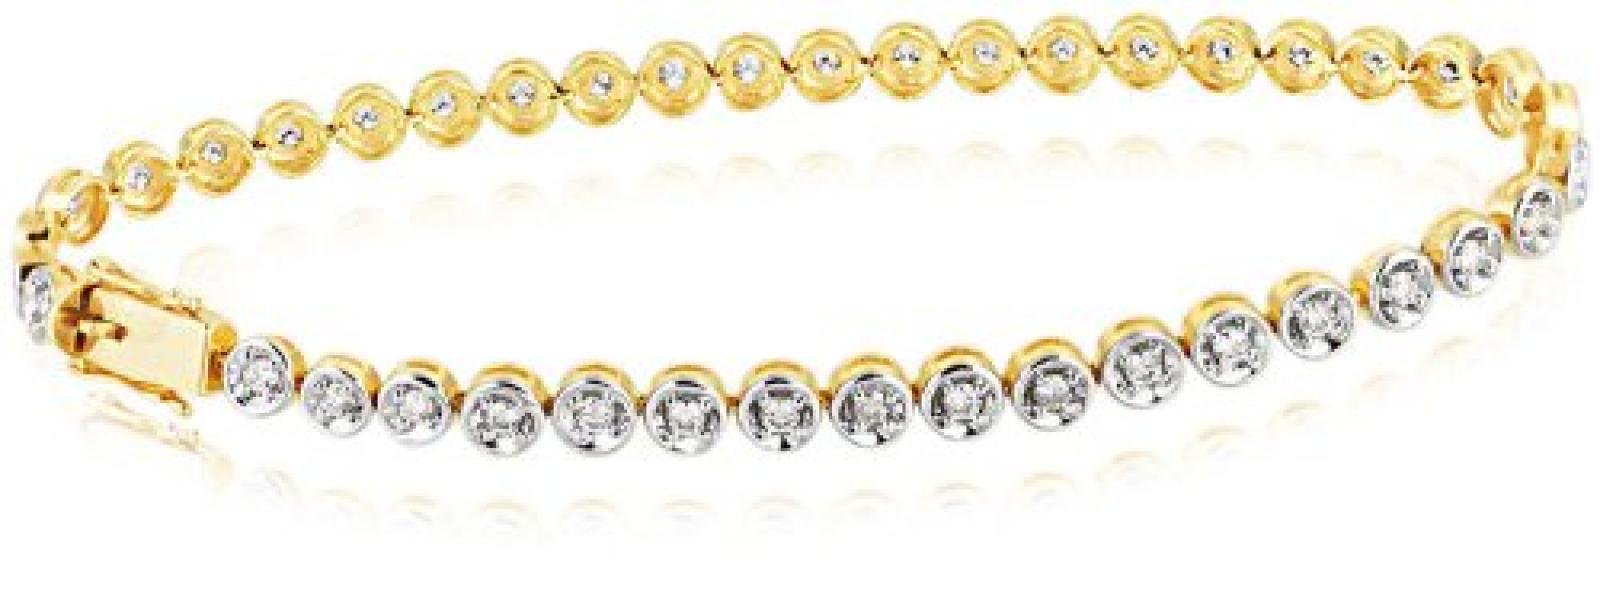 Goldmaid Damen-Tennisarmband Exklusiv 750 Gelbgold 40 Brillanten Lupenrein 1,50 ct. Ex A2908GG 